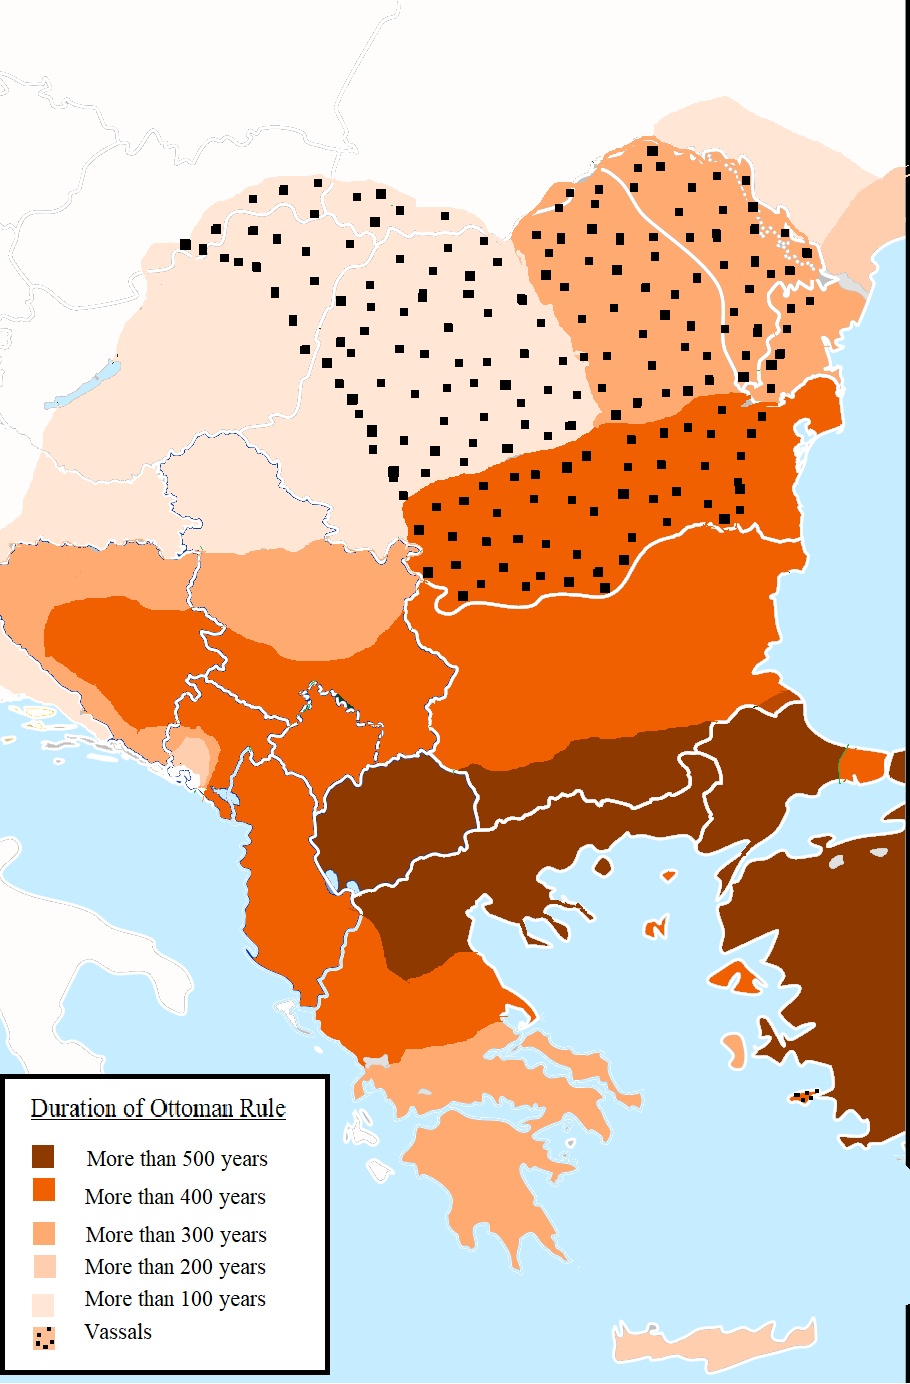 Terytoria pod panowaniem Imperium Osmańskiego (obecna Turcja) w Europie z liczbą lat kiedy były częścią państwa